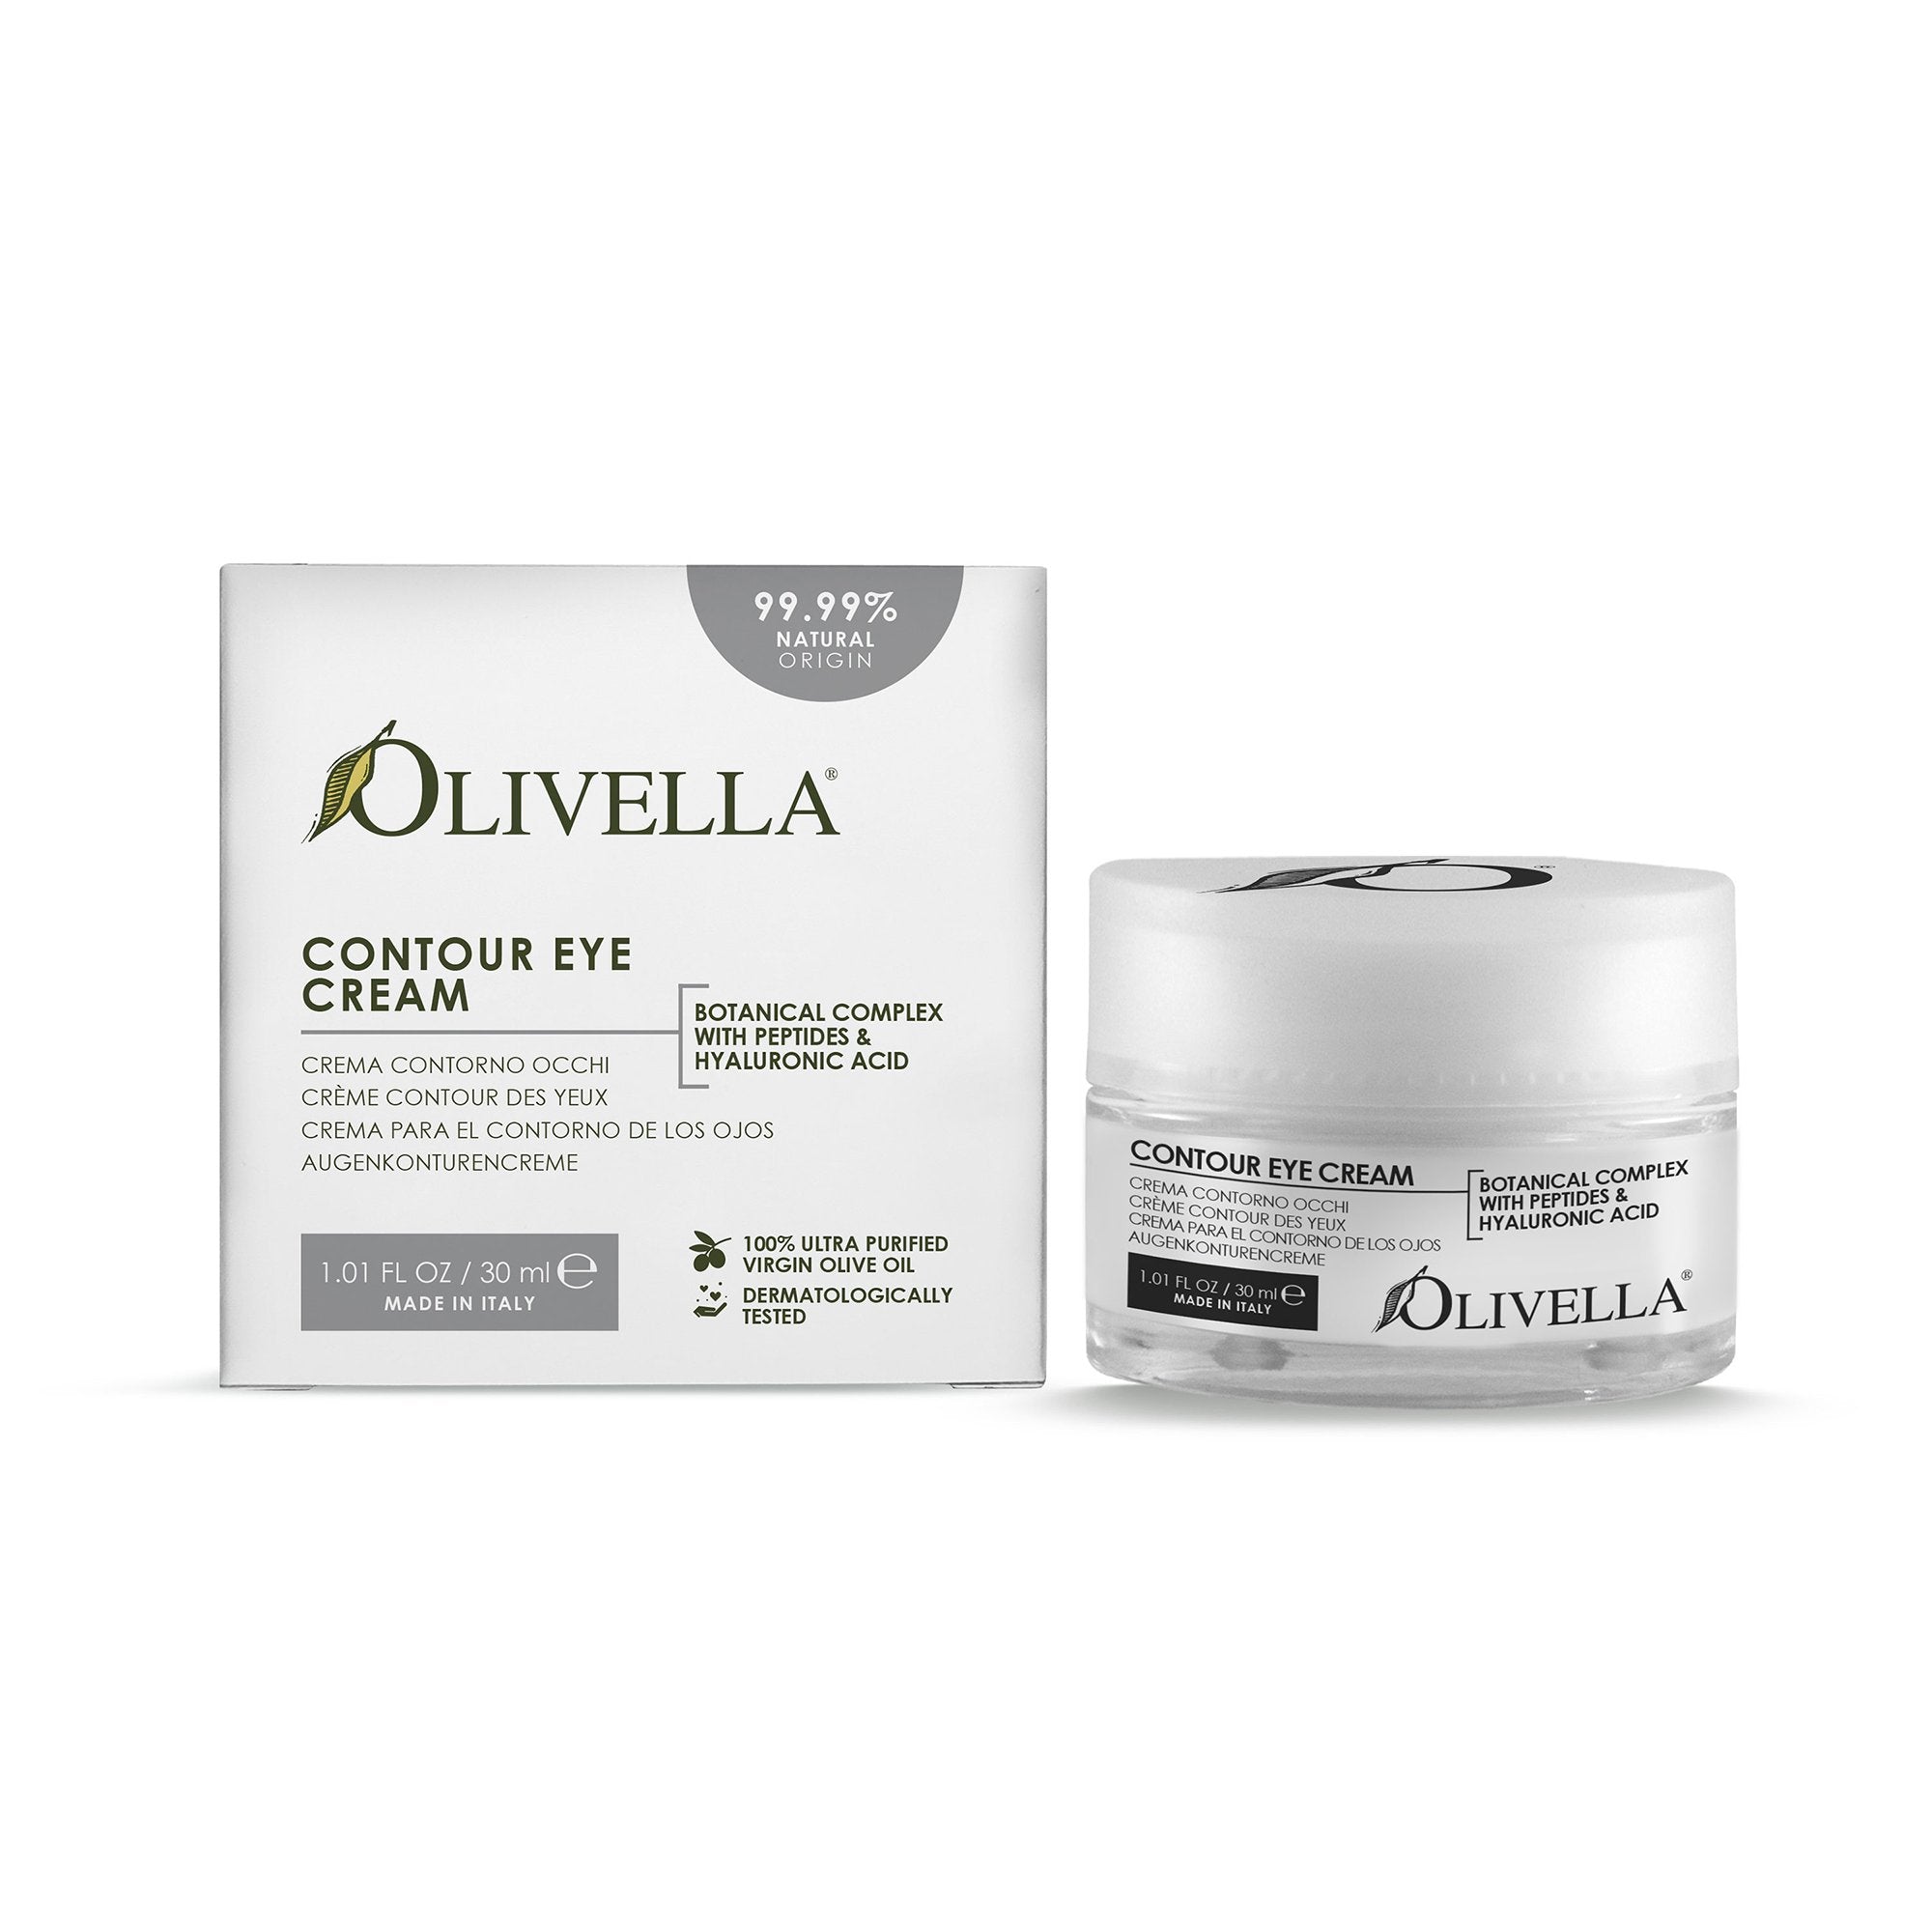 Olivella Contour Eye Cream 1.01 Oz - Olivella